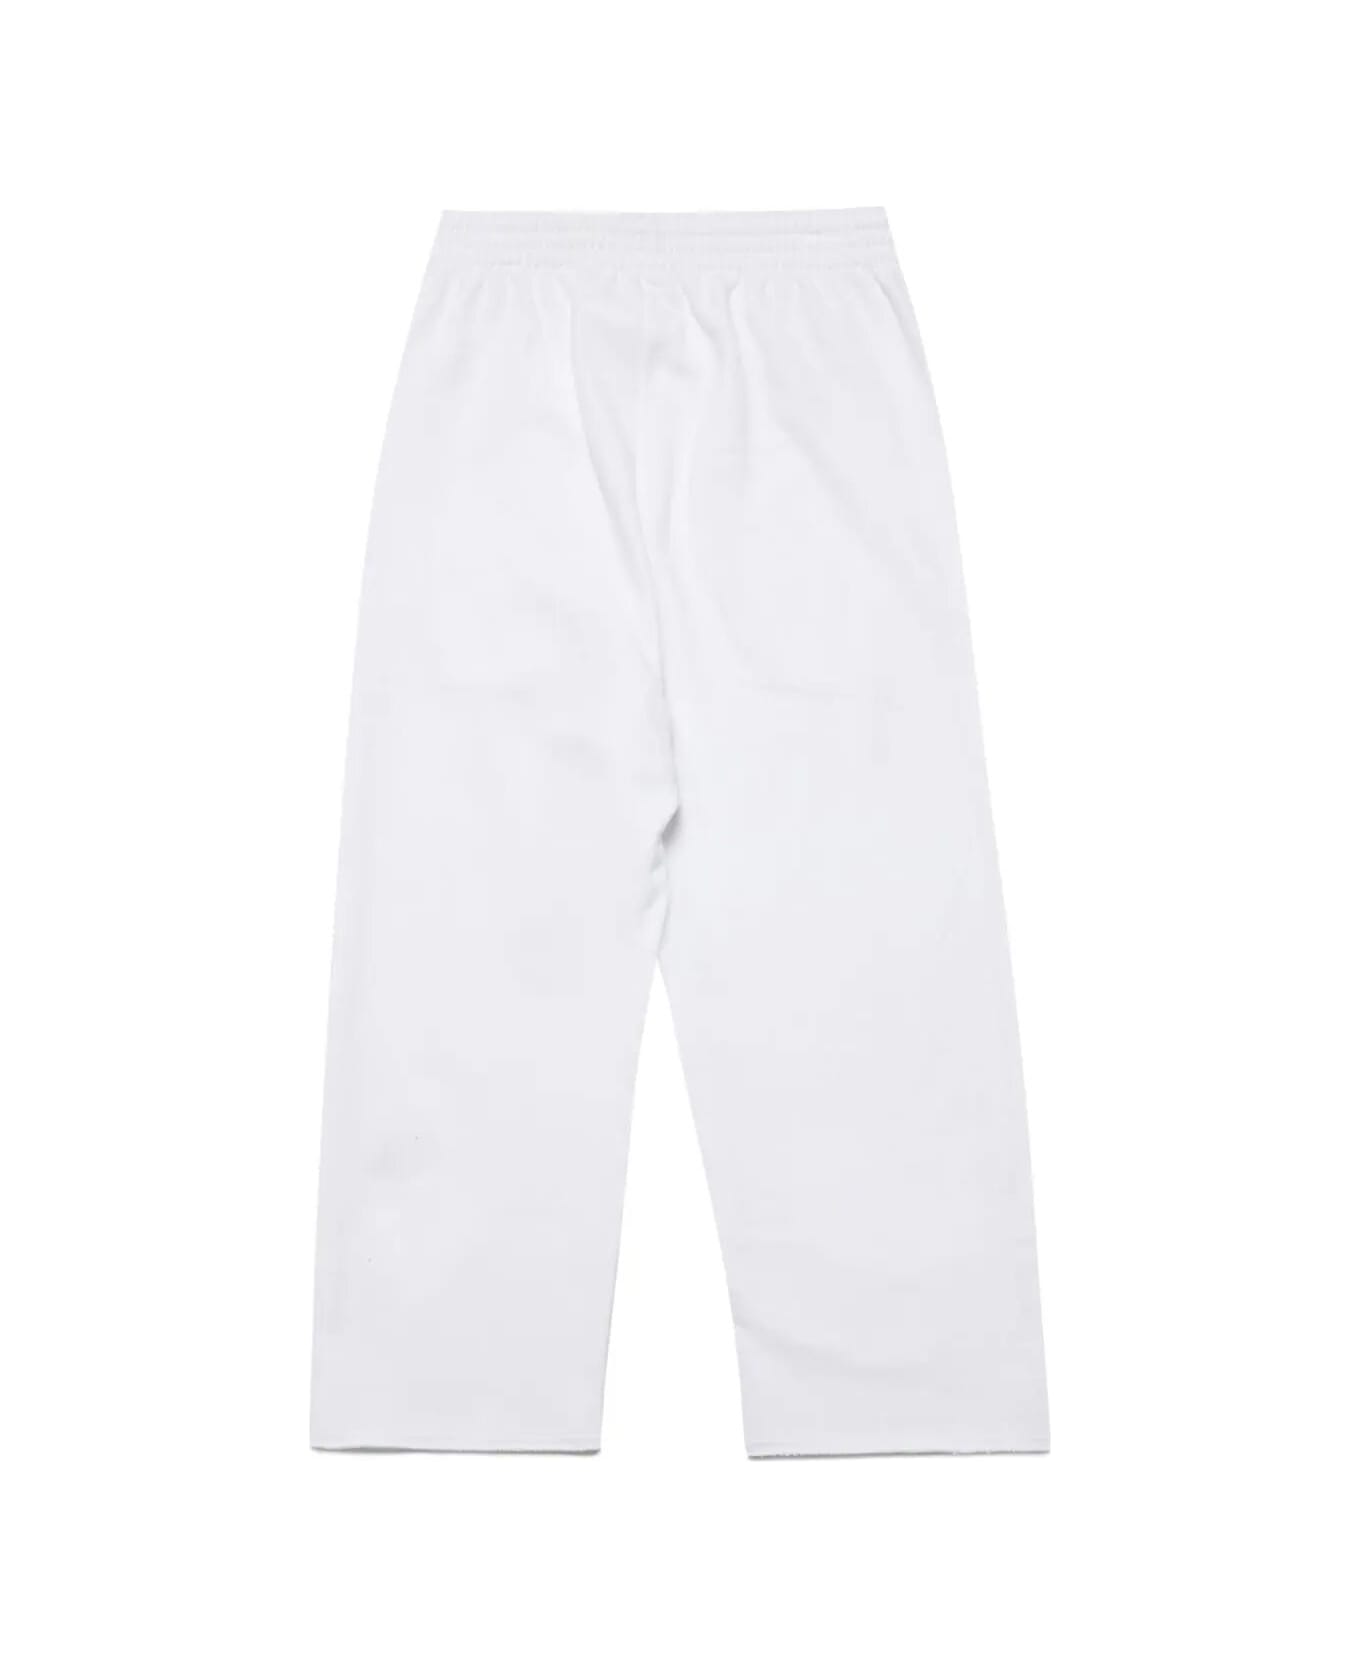 MM6 Maison Margiela Pants - White ボトムス